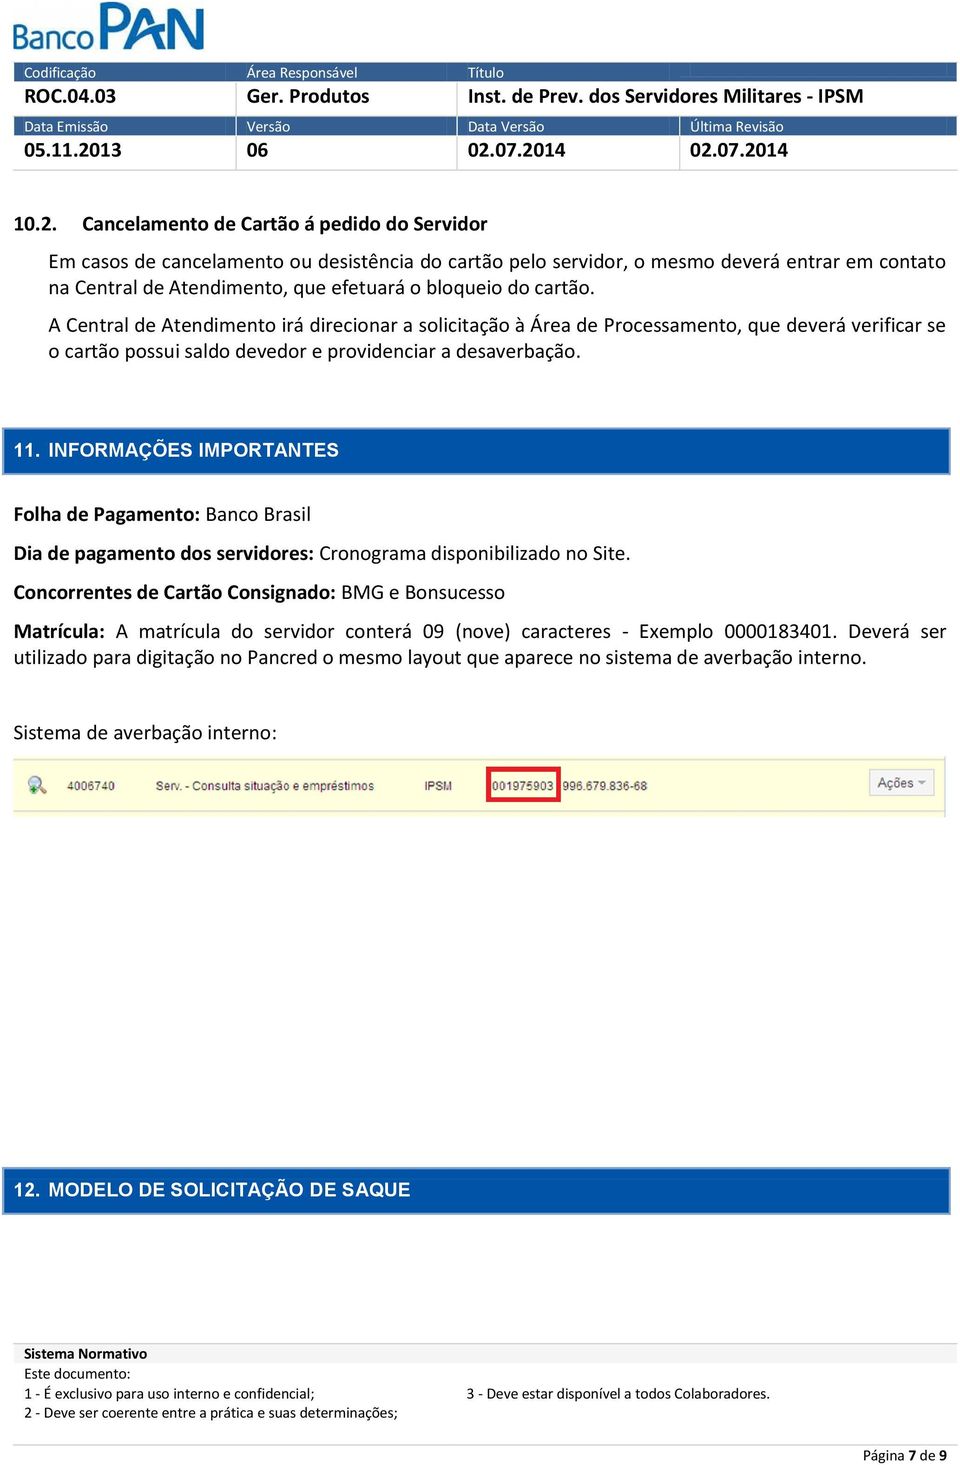 INFORMAÇÕES IMPORTANTES FOAÇÕES INPORTANTES Folha de Pagamento: Banco Brasil Dia de pagamento dos servidores: Cronograma disponibilizado no Site.